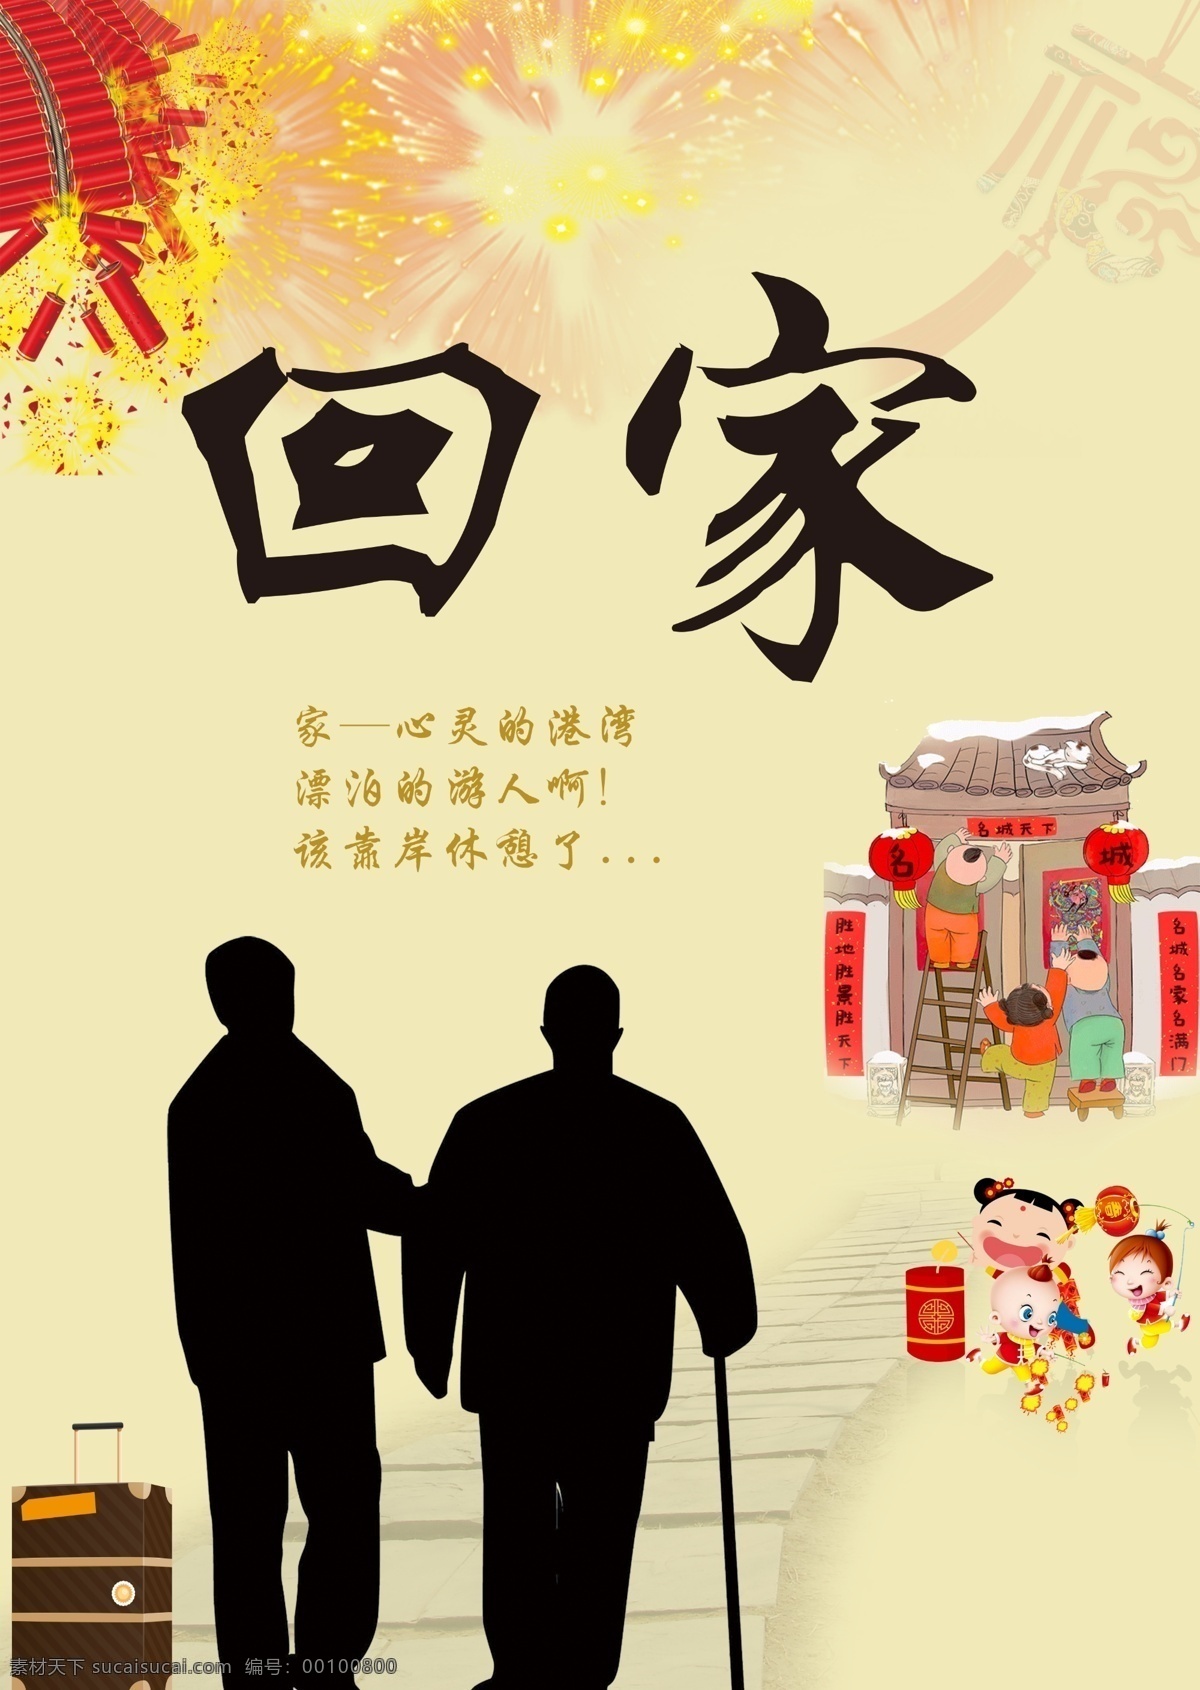 春节 宣传海报 设计素材 大年初一 海报宣传 团圆 饺子